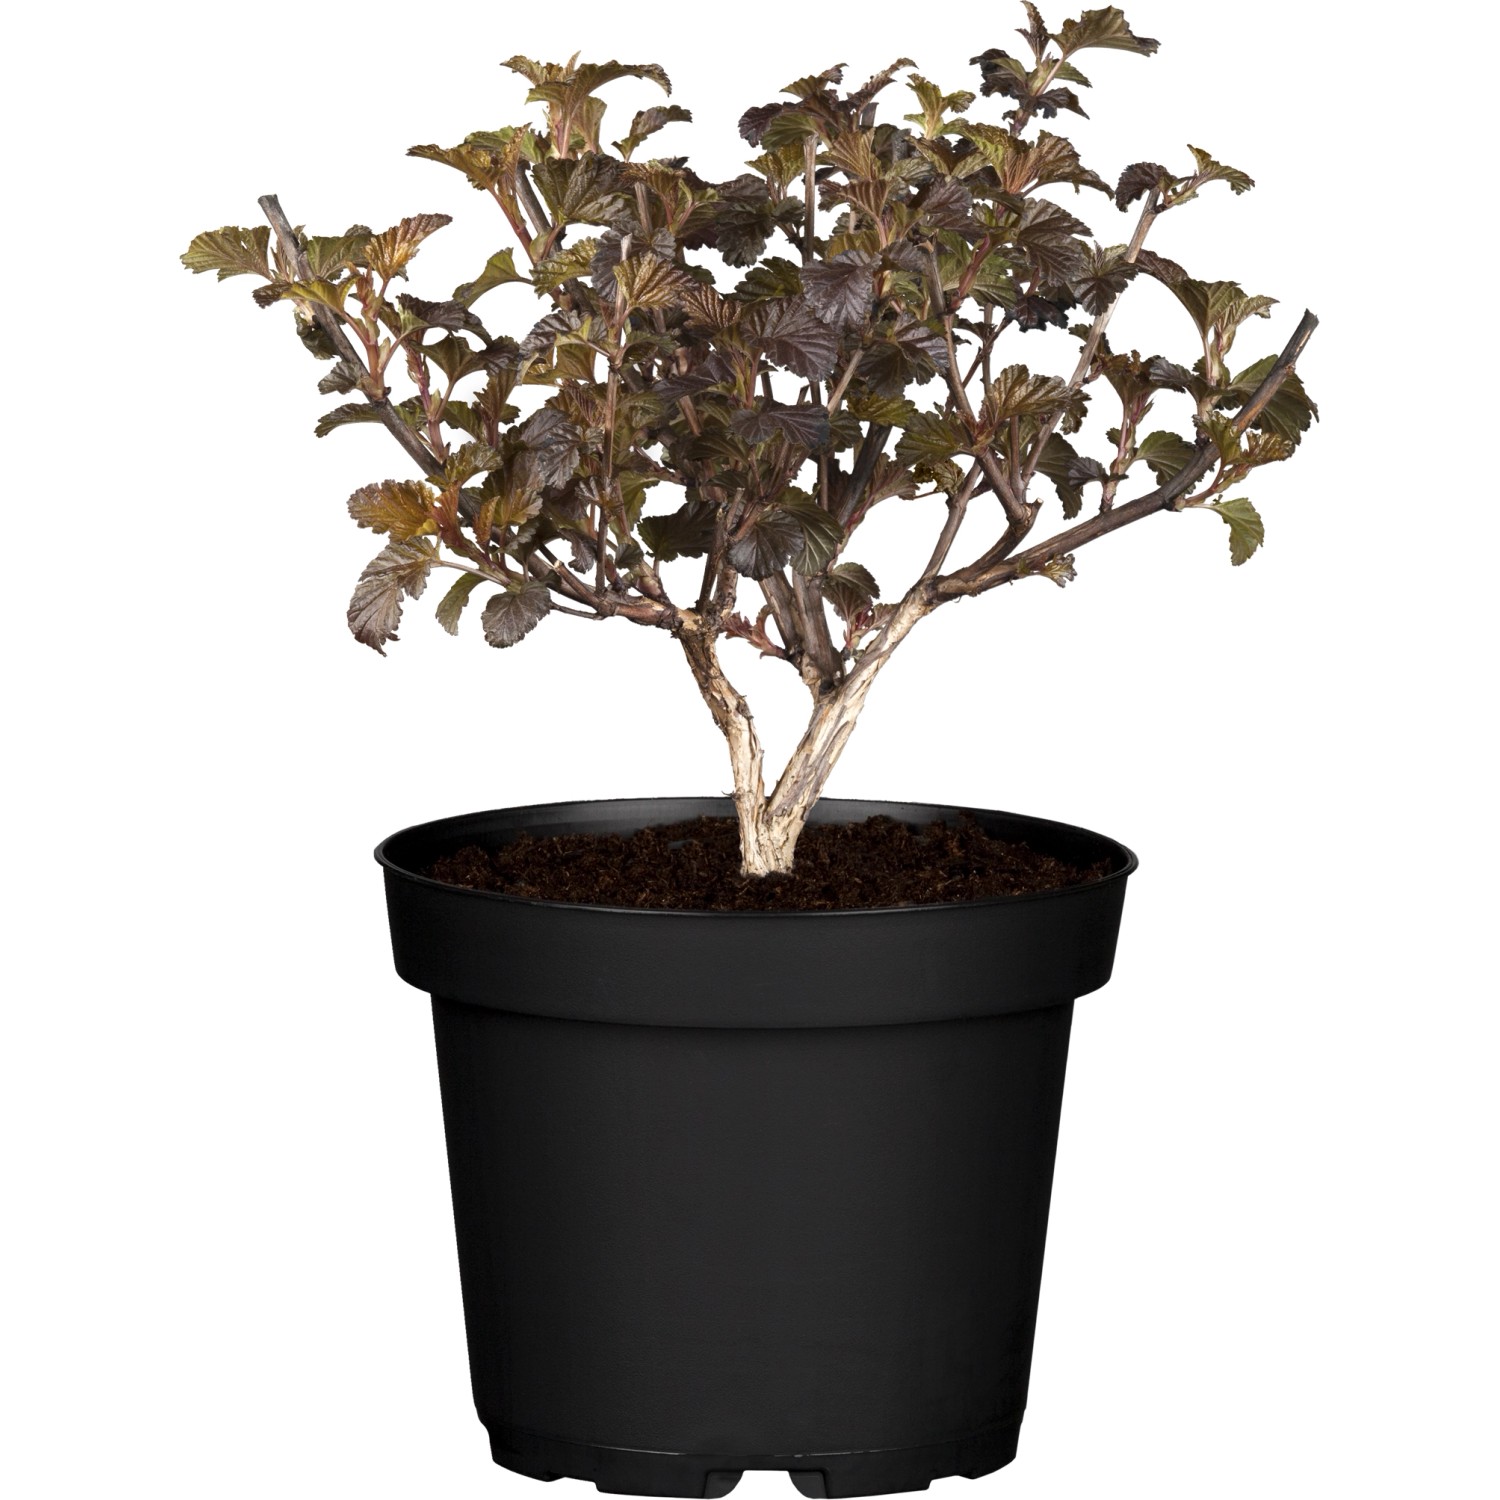 Blasenspiere Amber Jubilee ca. 40 - 60 cm Physocarpus opulifolius günstig online kaufen